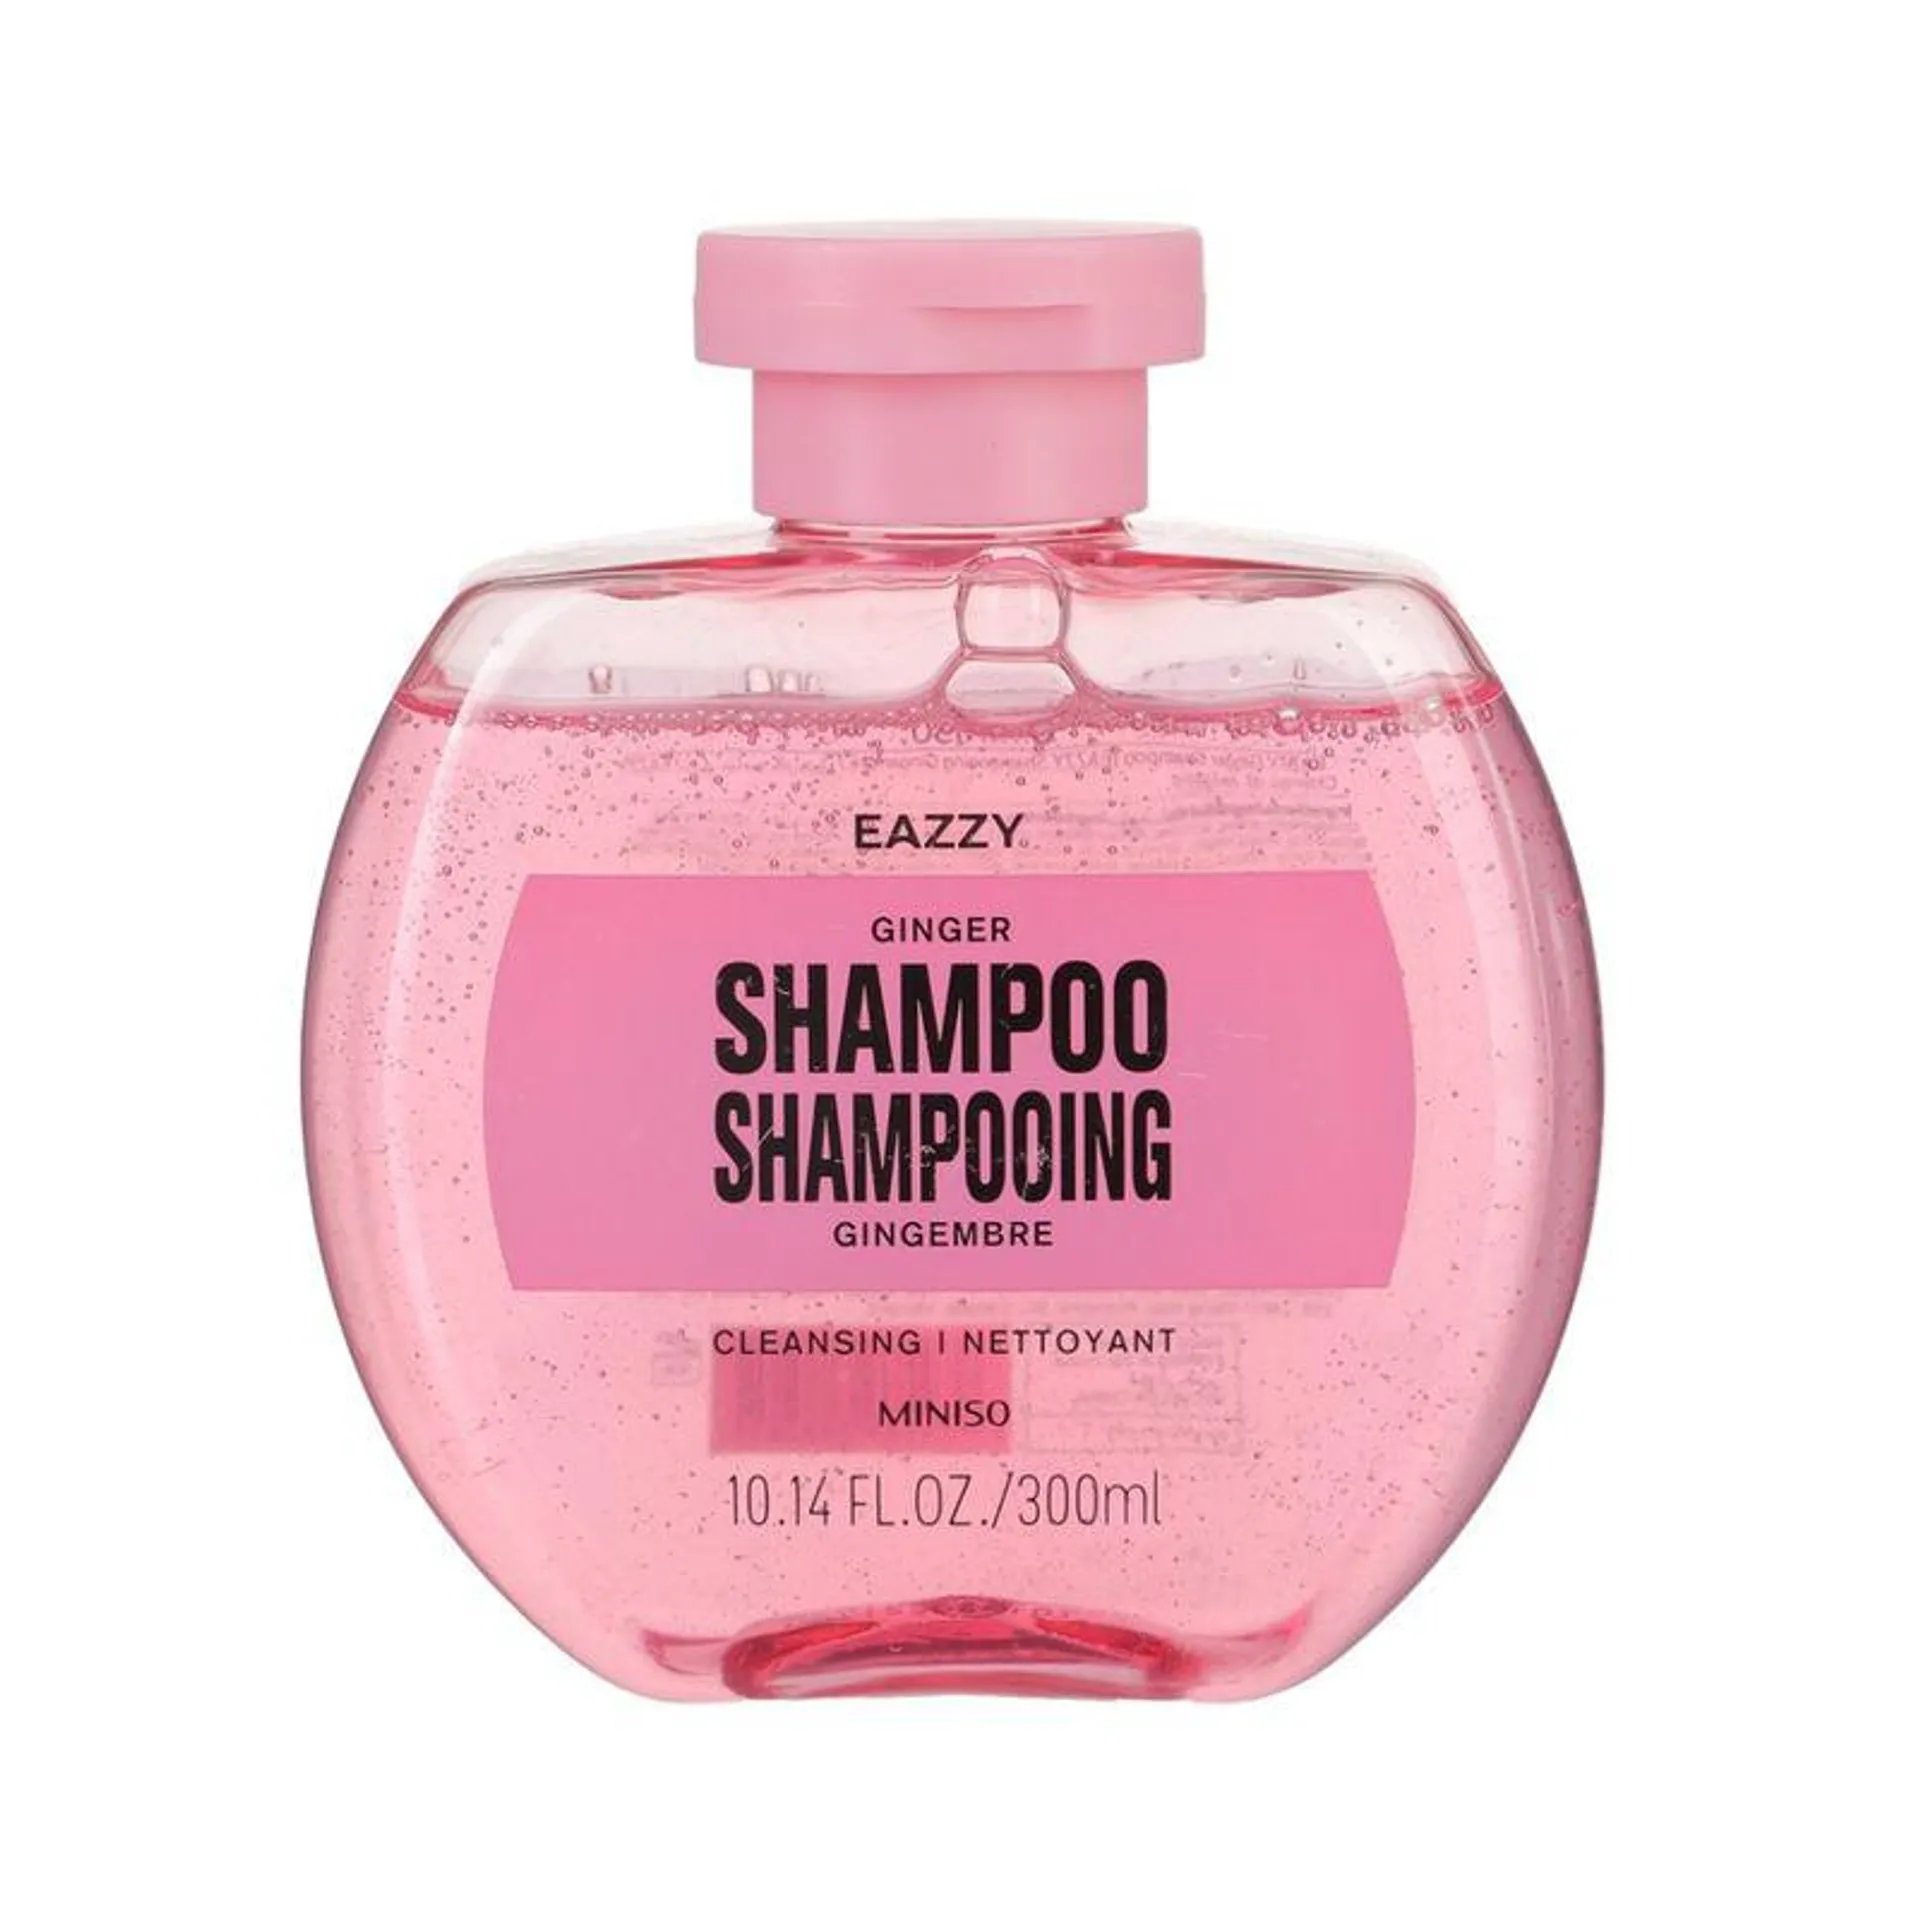 Shampoo de Jengibre Eazzy